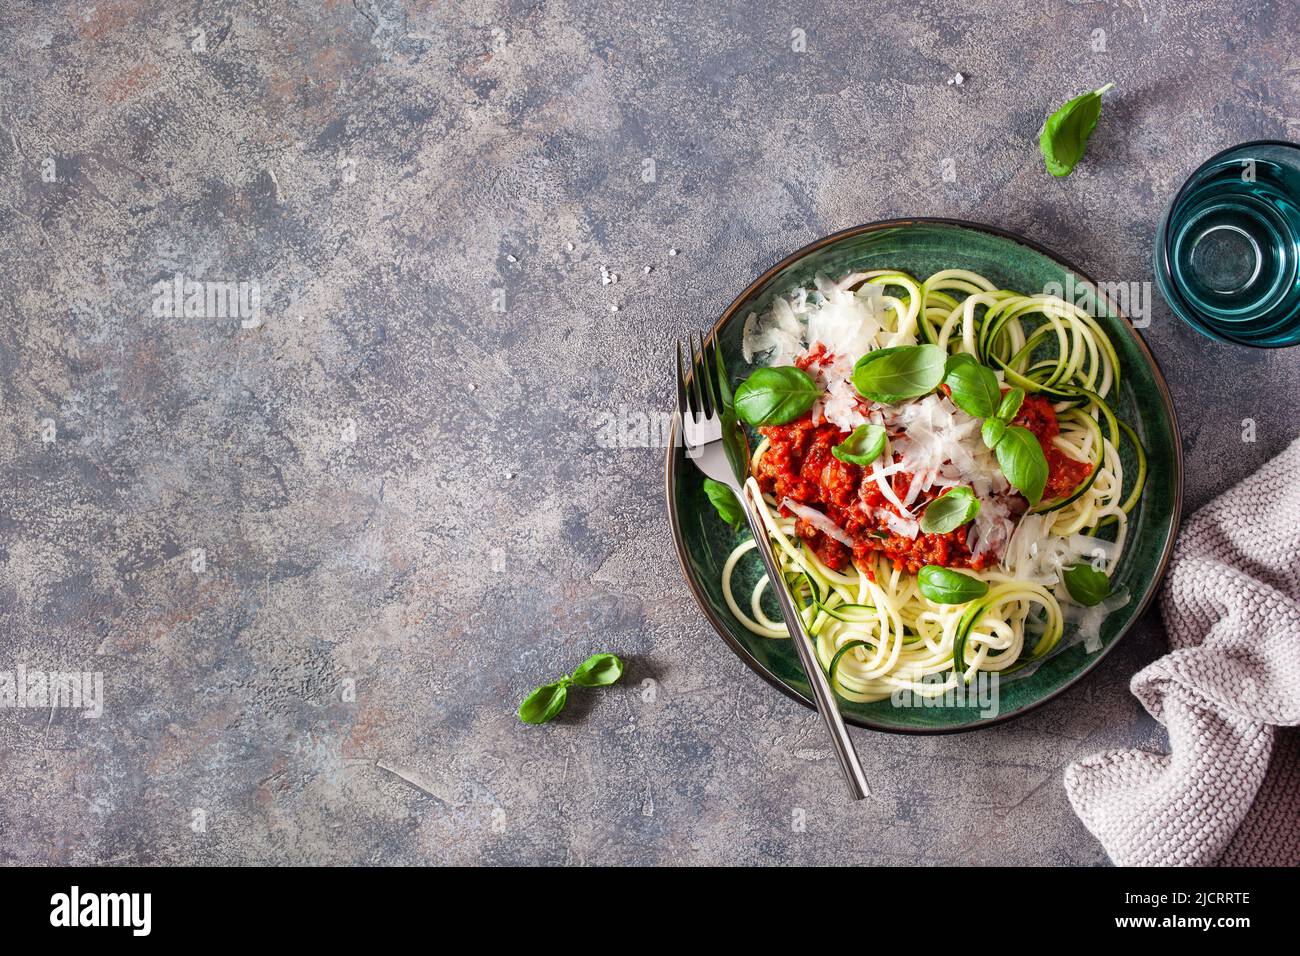 Ceto paleo zoodles bolognese: zucchini fideos con salsa de carne y queso parmesano Foto de stock